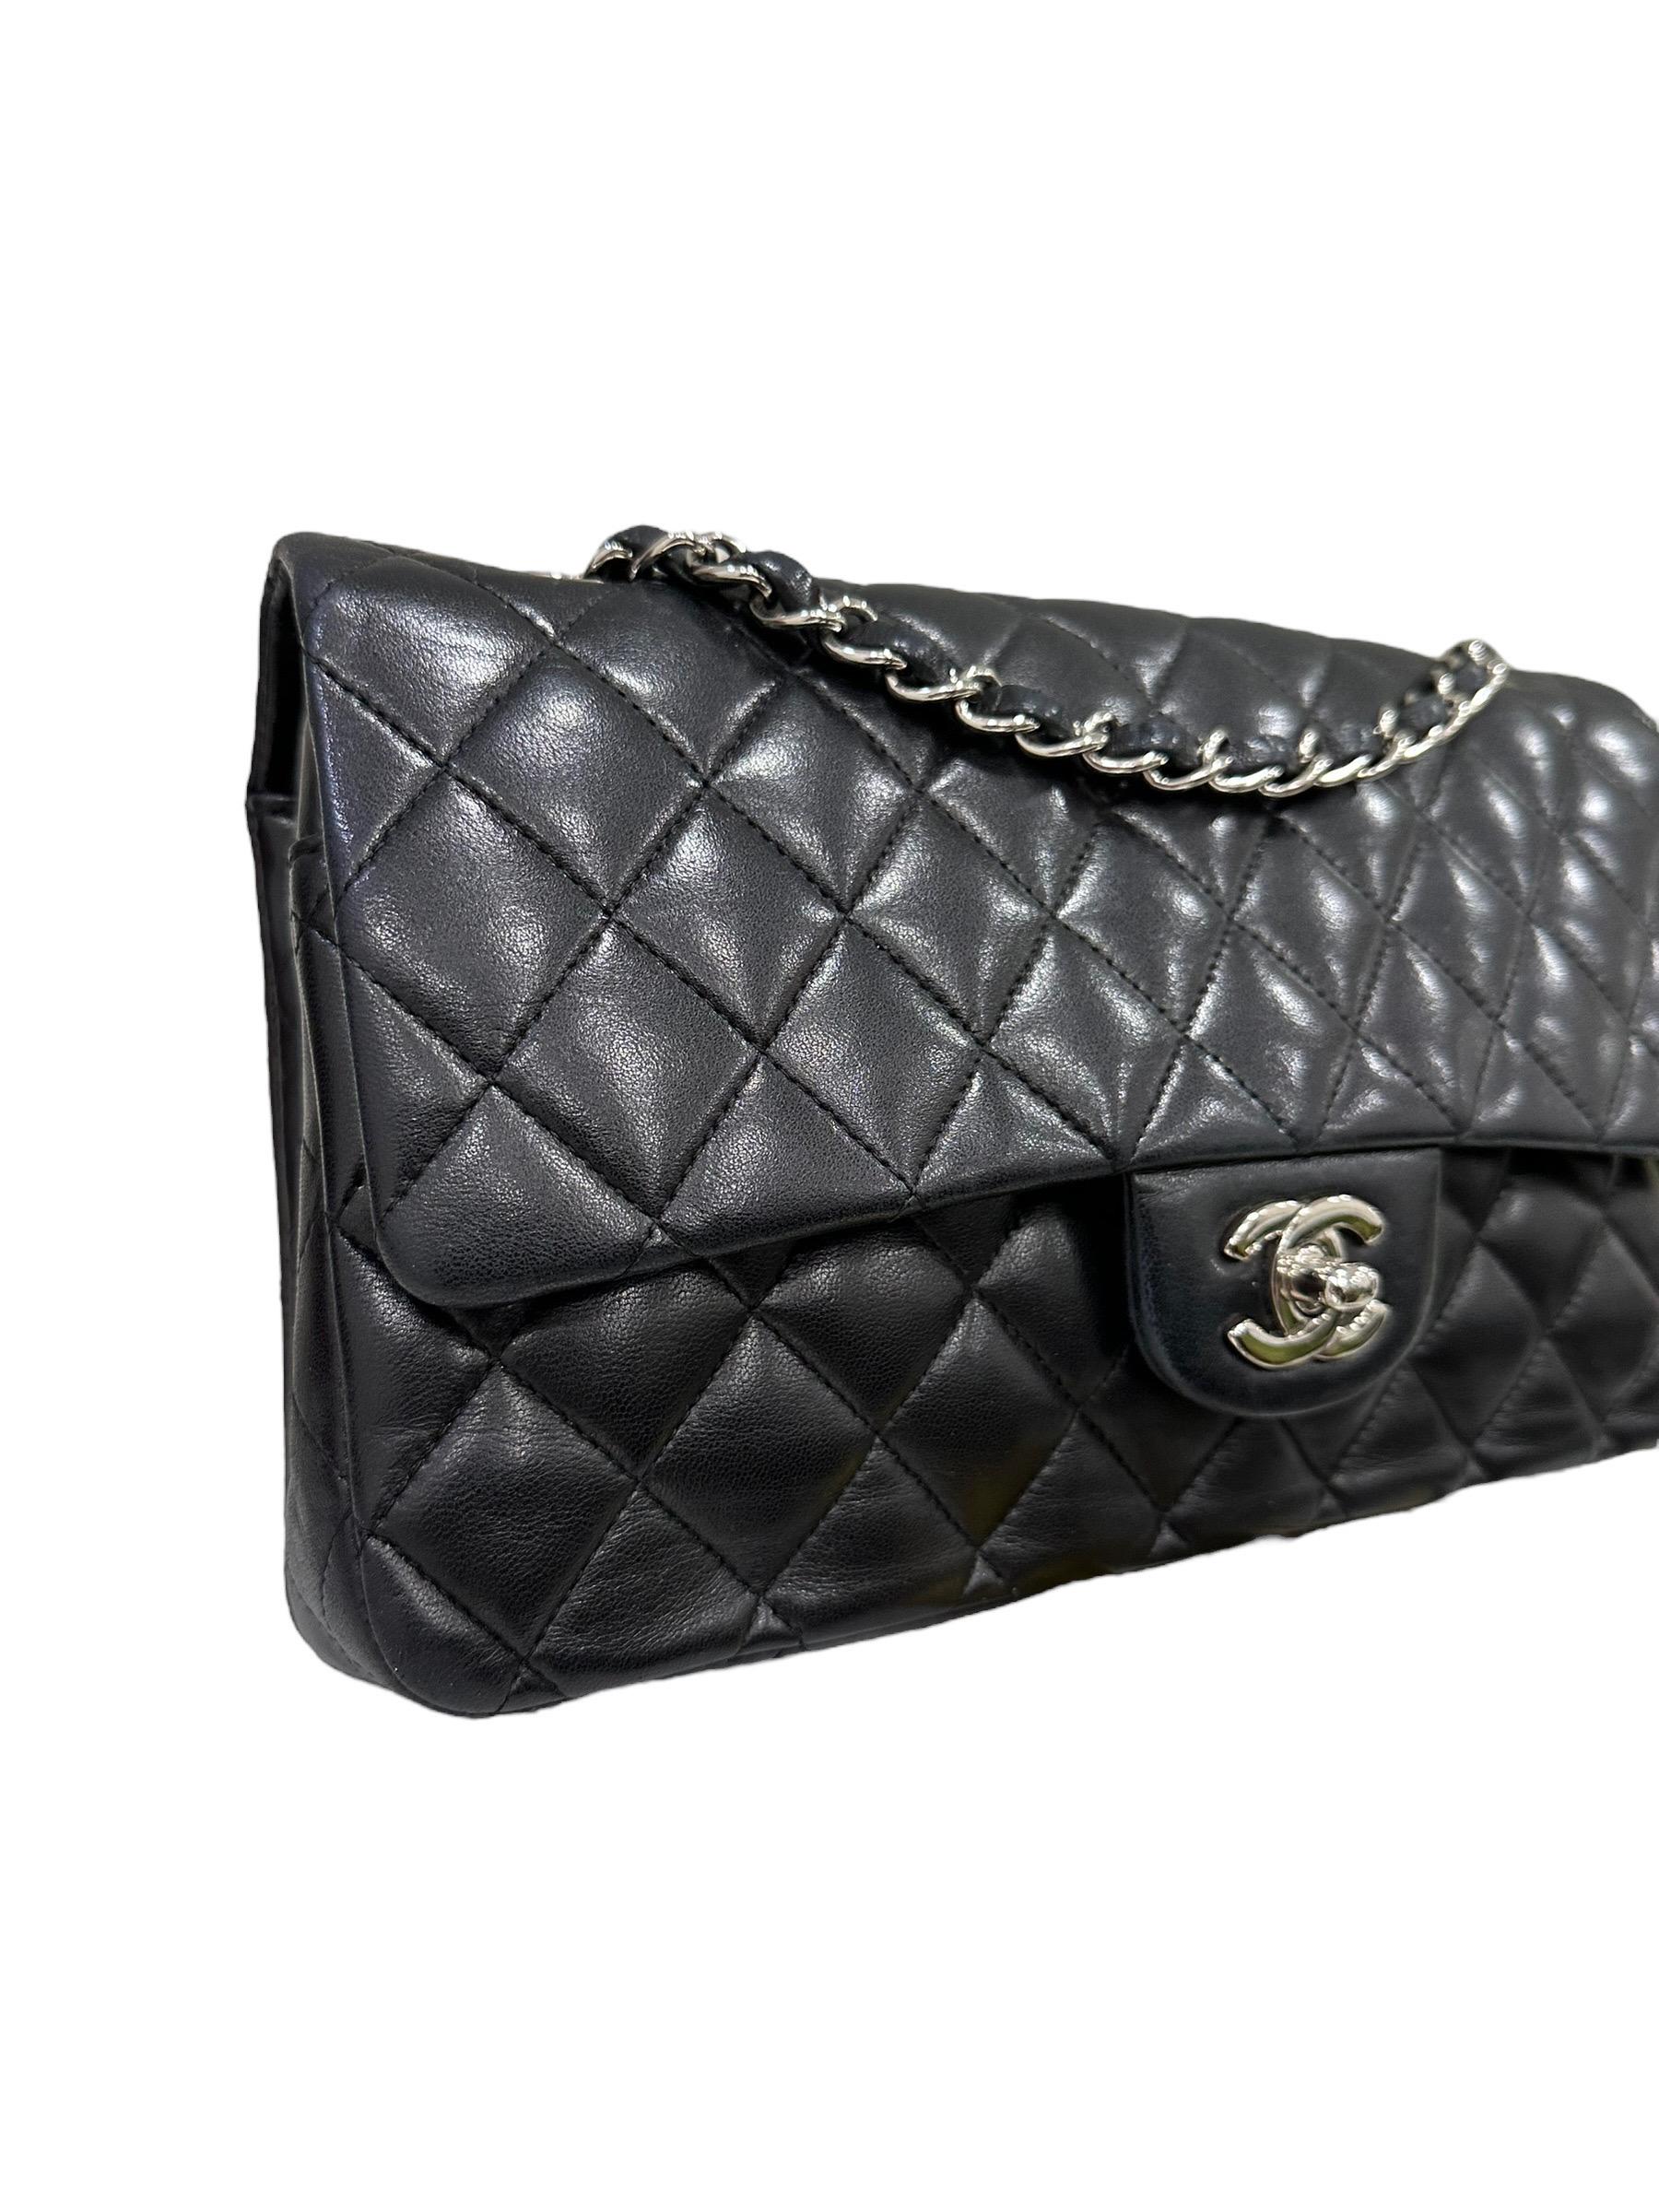 Women's 2008 Chanel. 2.55 Timeless Black Leather Shoulder Bag